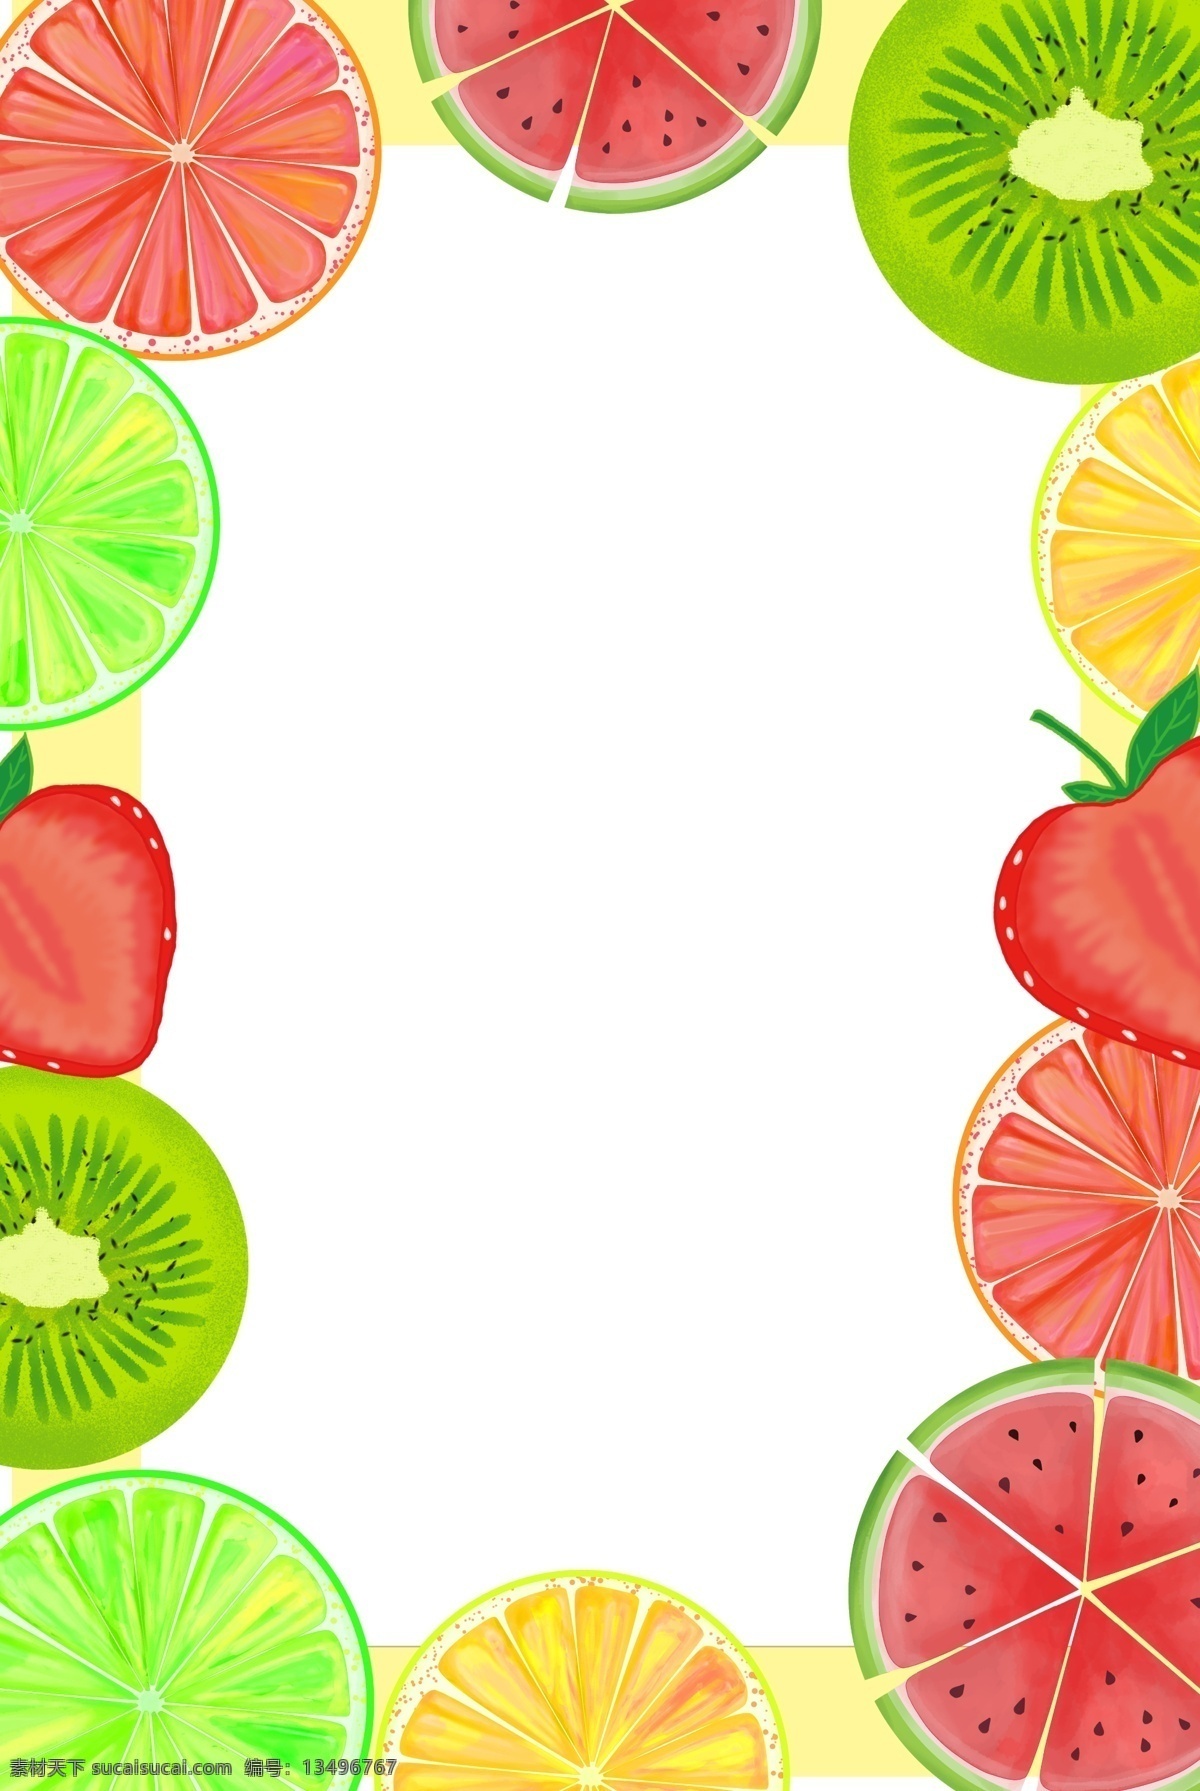 矢量 美食 水果 创意 背景 餐饮 手绘 卡通 草莓 猕猴桃 水果边框 夏日 清爽 食品 海报 矢量素材